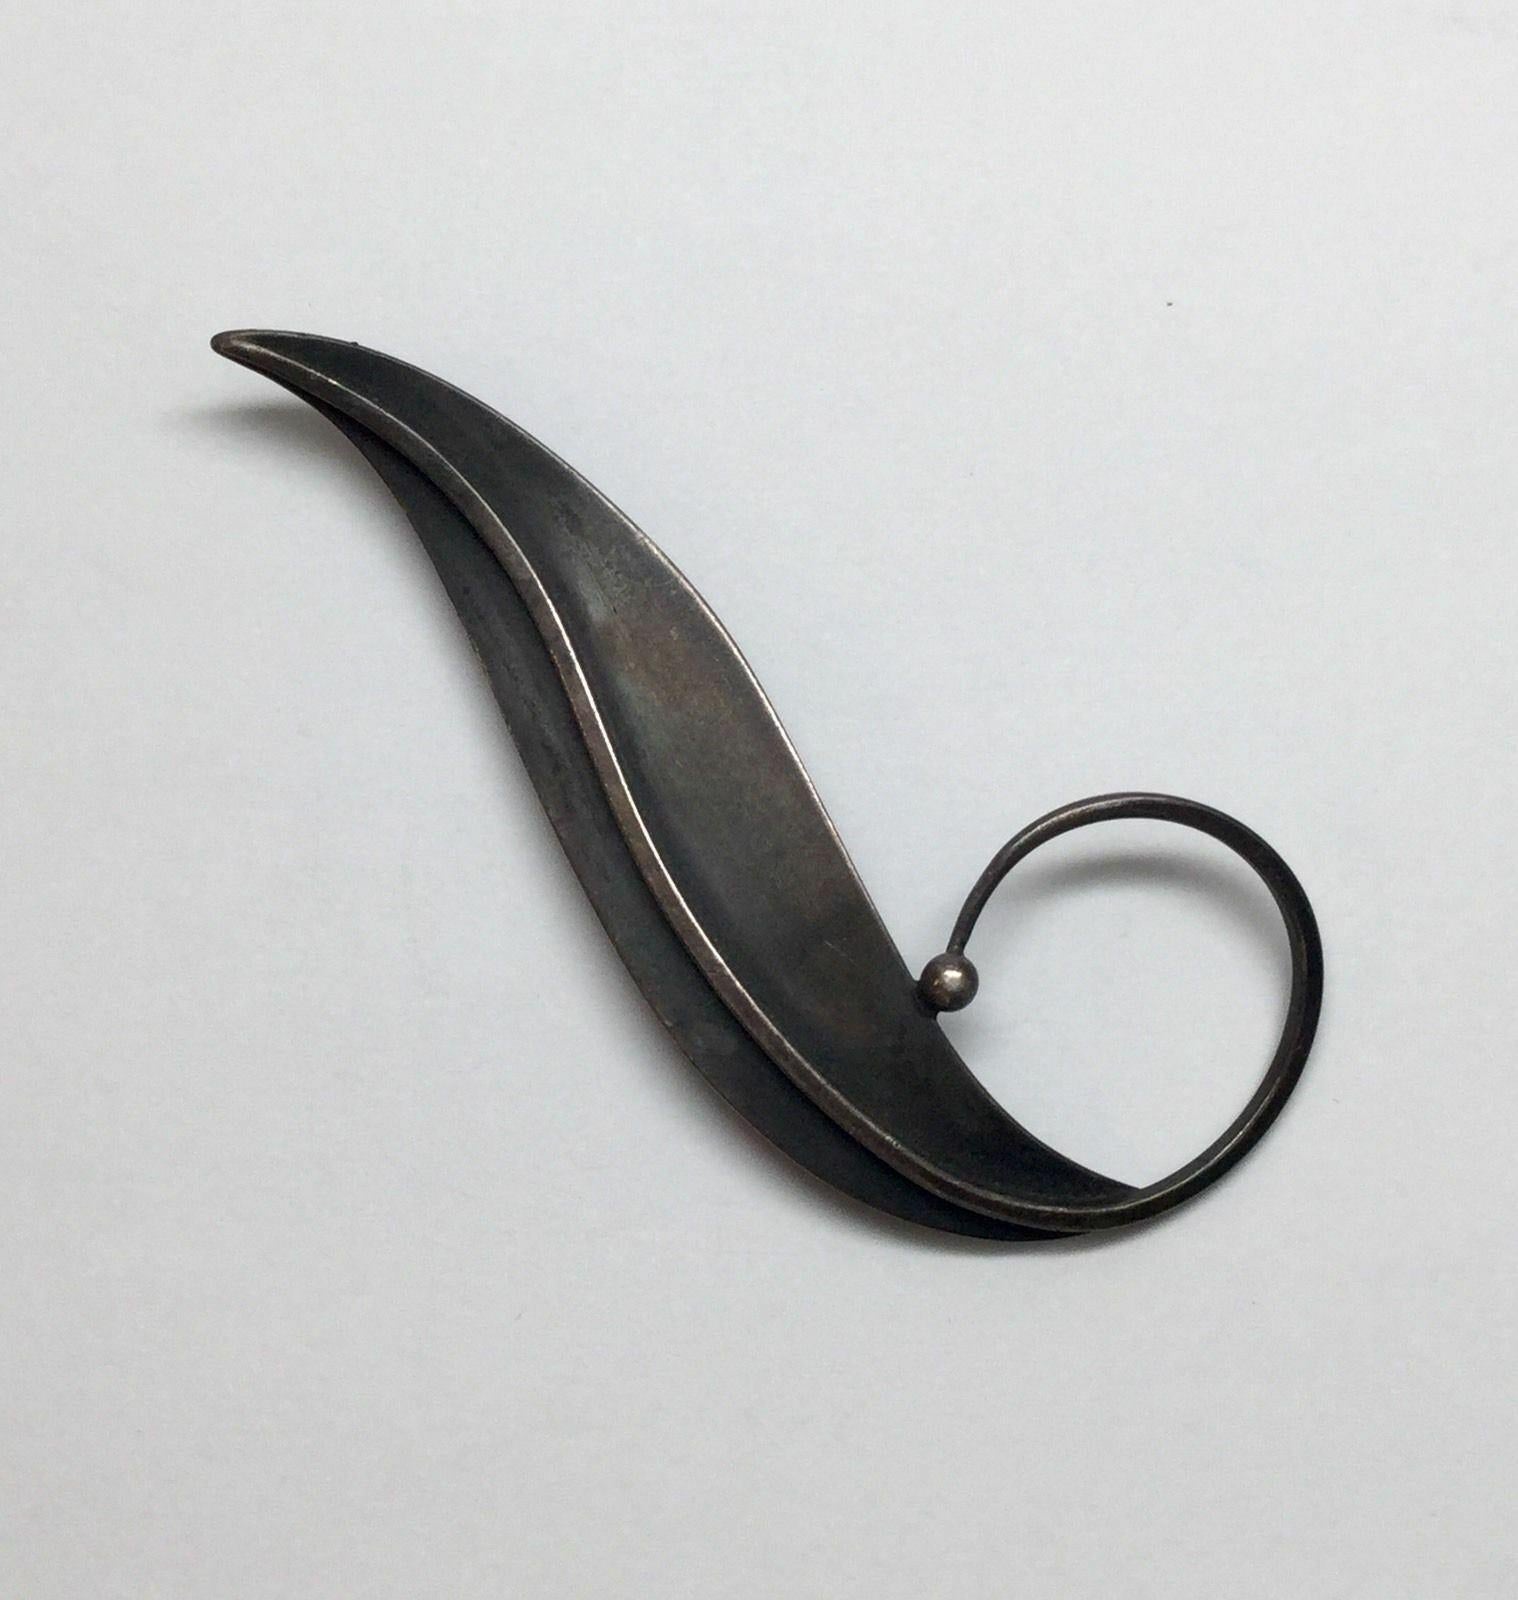 Modernist Paul Lobel sterling silver curved leaf pin brooch.

Marked: LOBEL STERLING.

Measures: 3 5/8